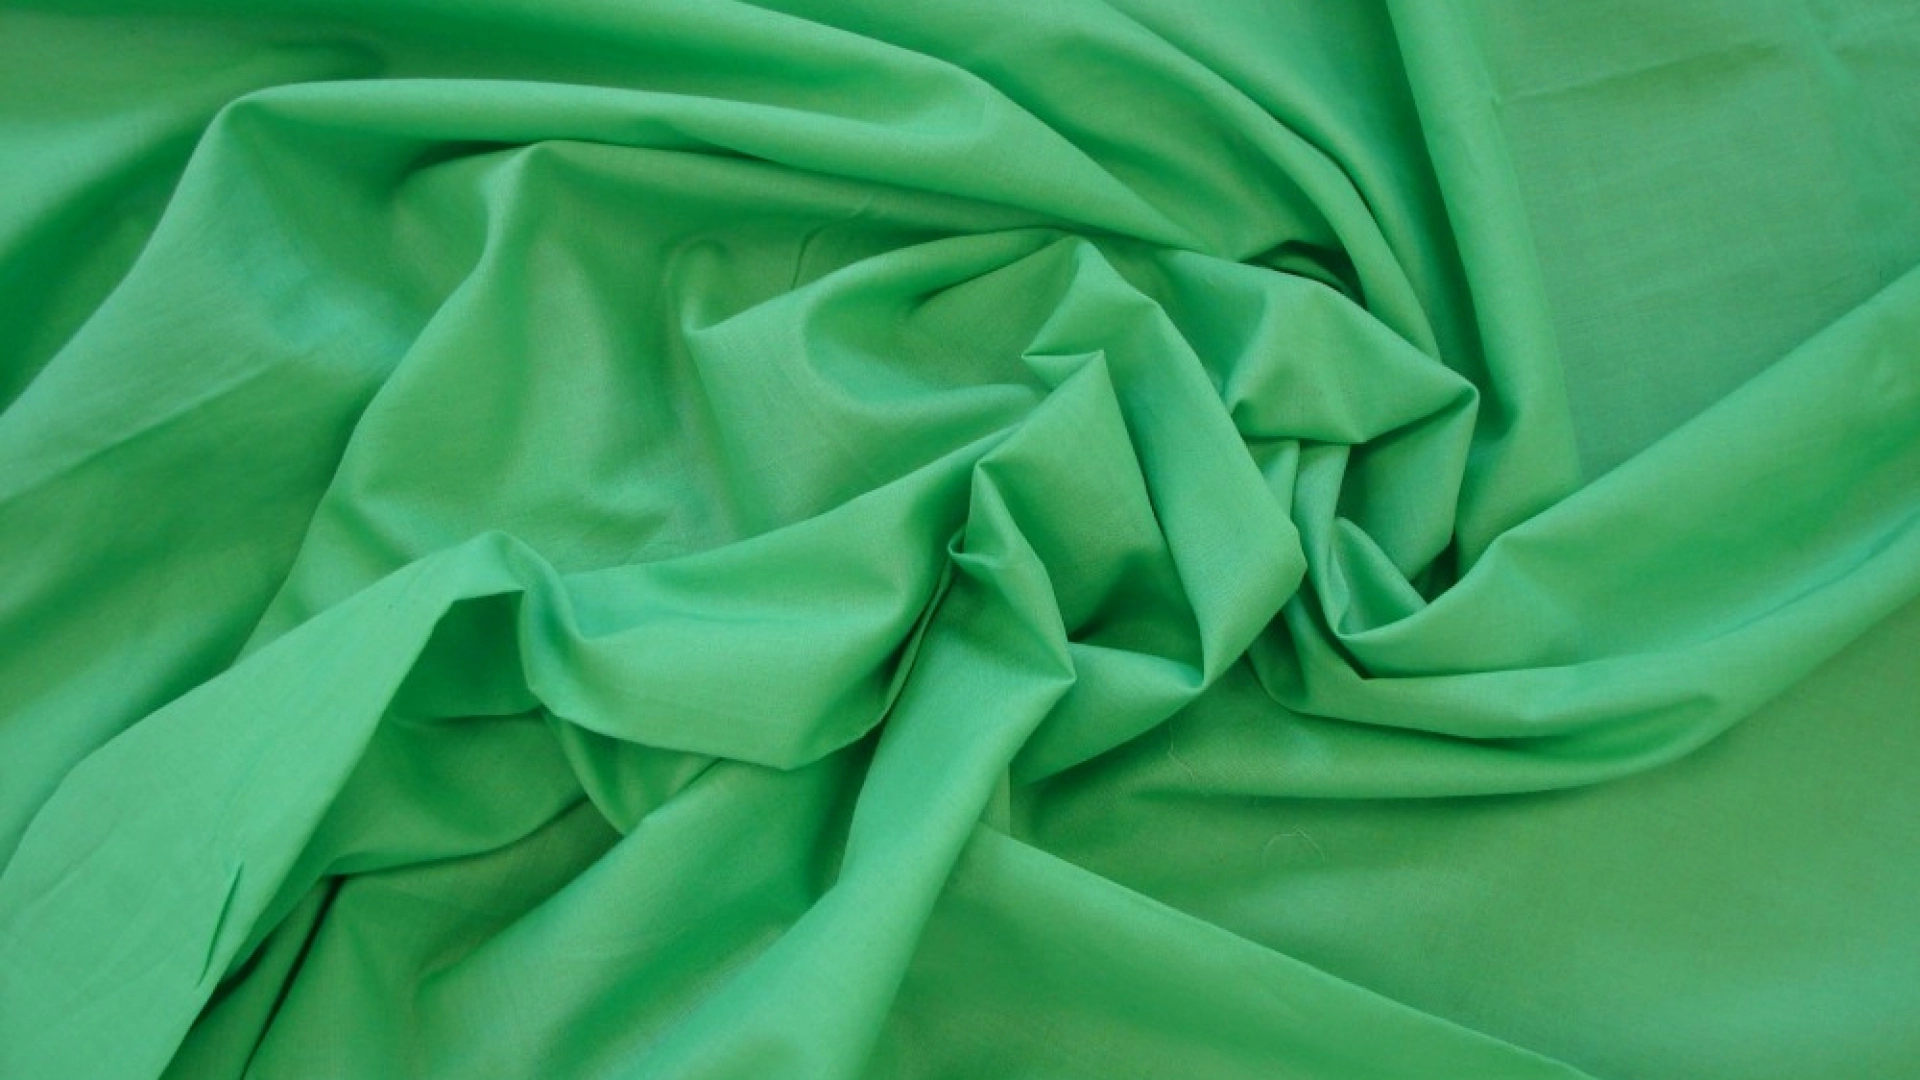 Однотонный батист зеленого цвета в качестве компаньона или подкладки под шитье арт. 436730. В составе хлопок, тактильно очень мягкий, изящный, колом не стоит.